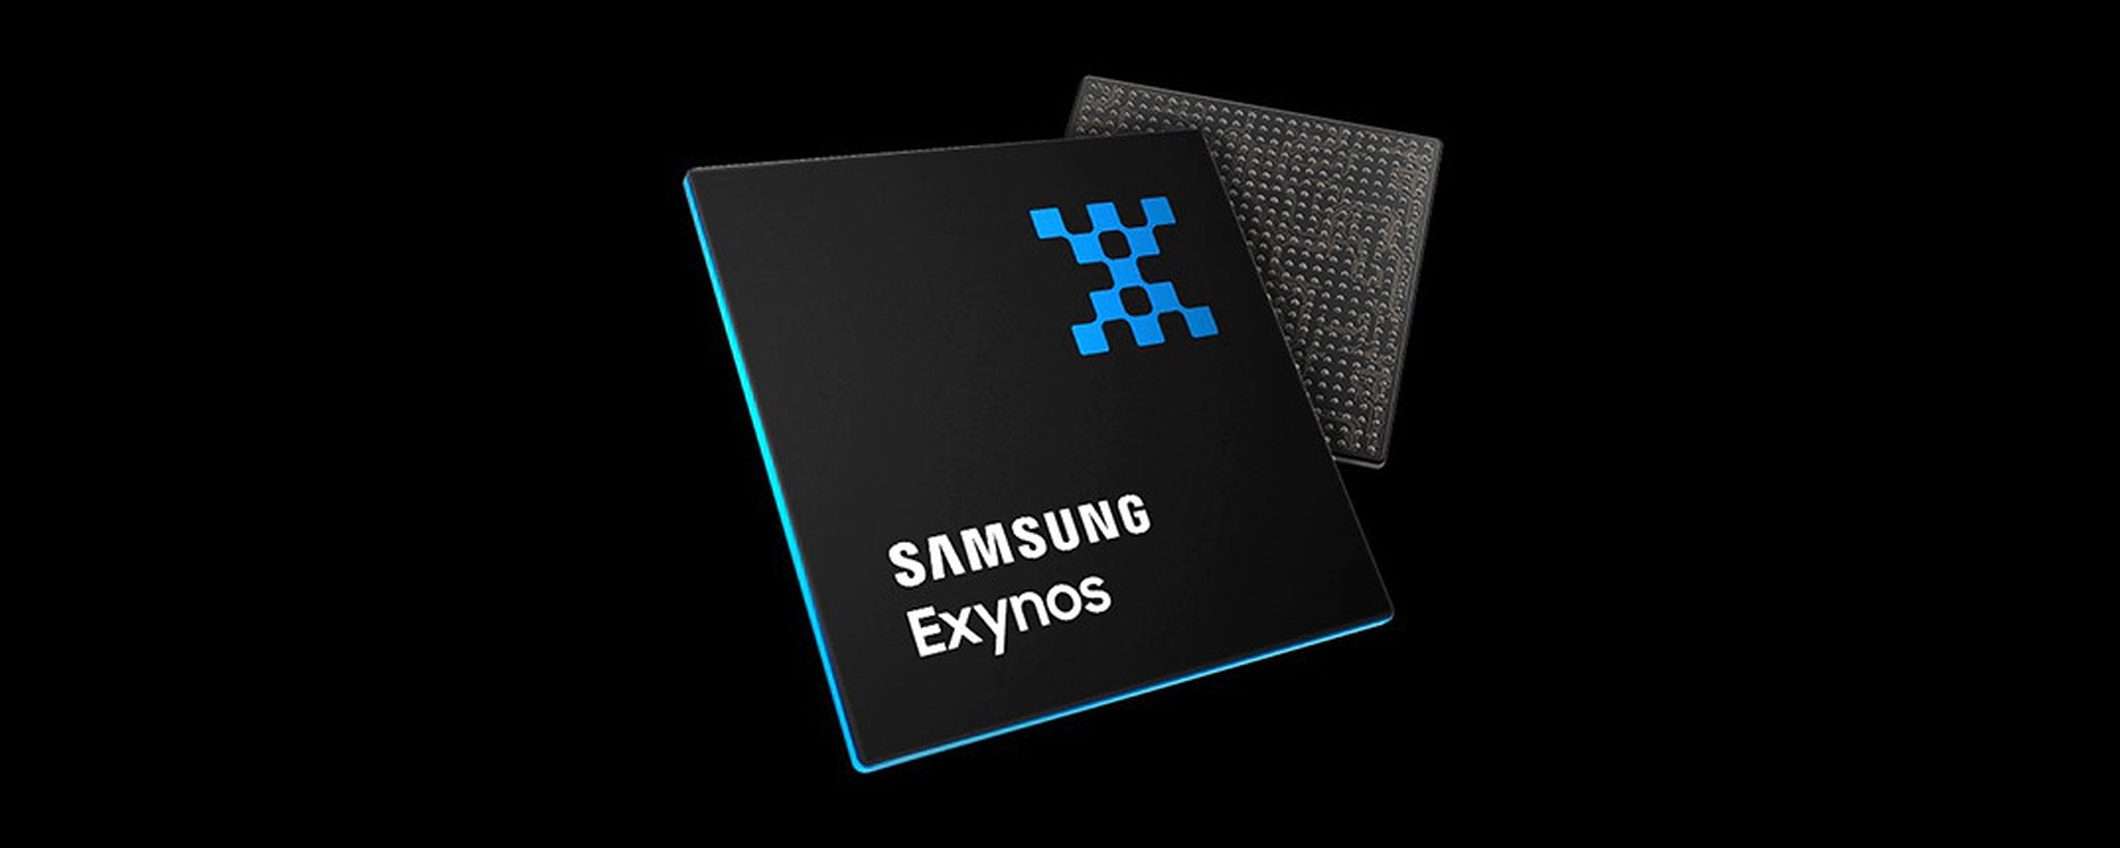 Samsung sta creando core CPU personalizzati per i suoi Exynos?